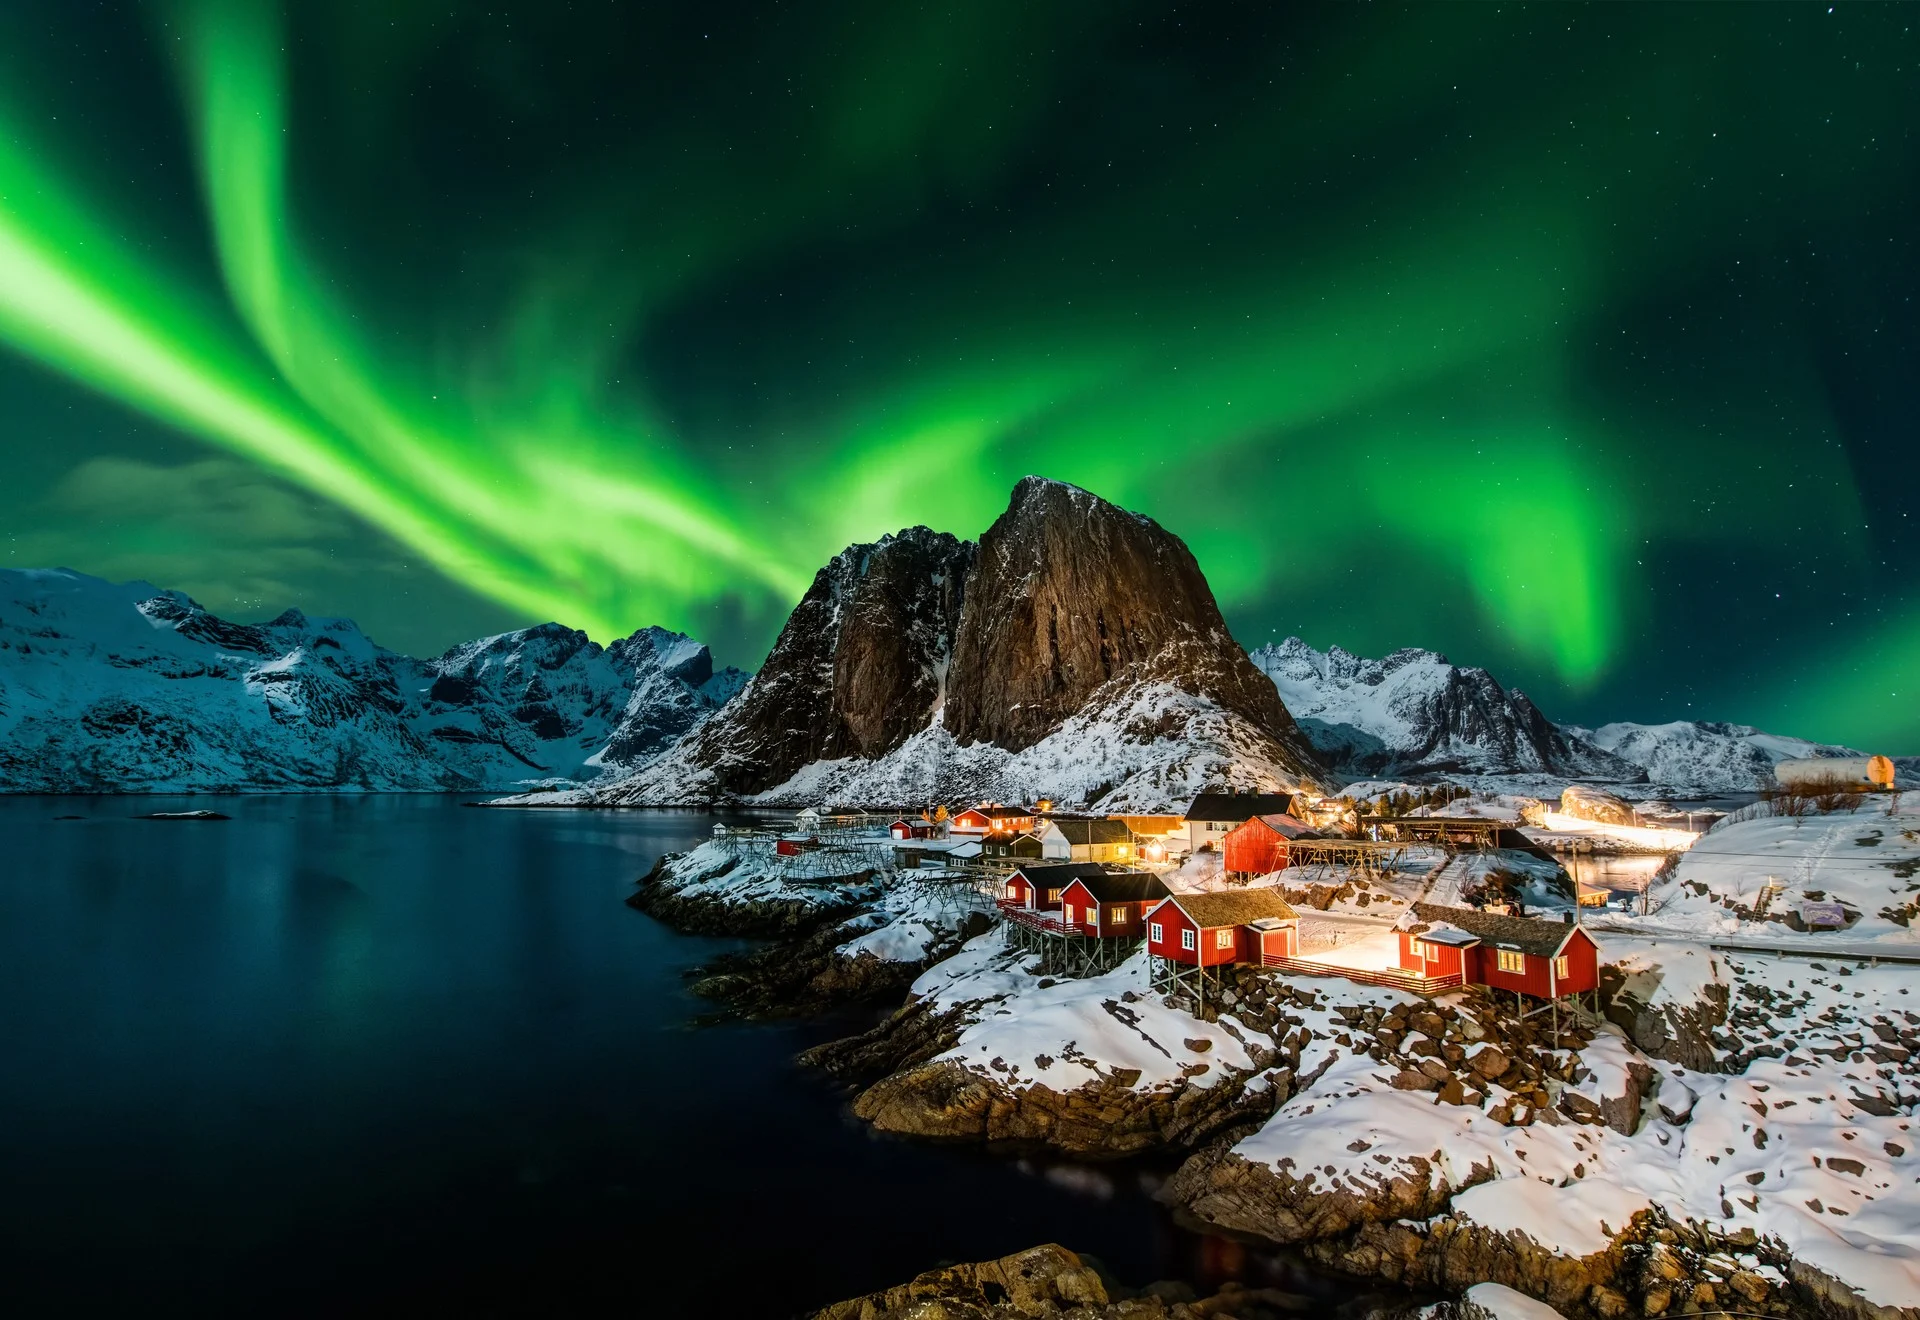 Reine-Norway - Northern Lights